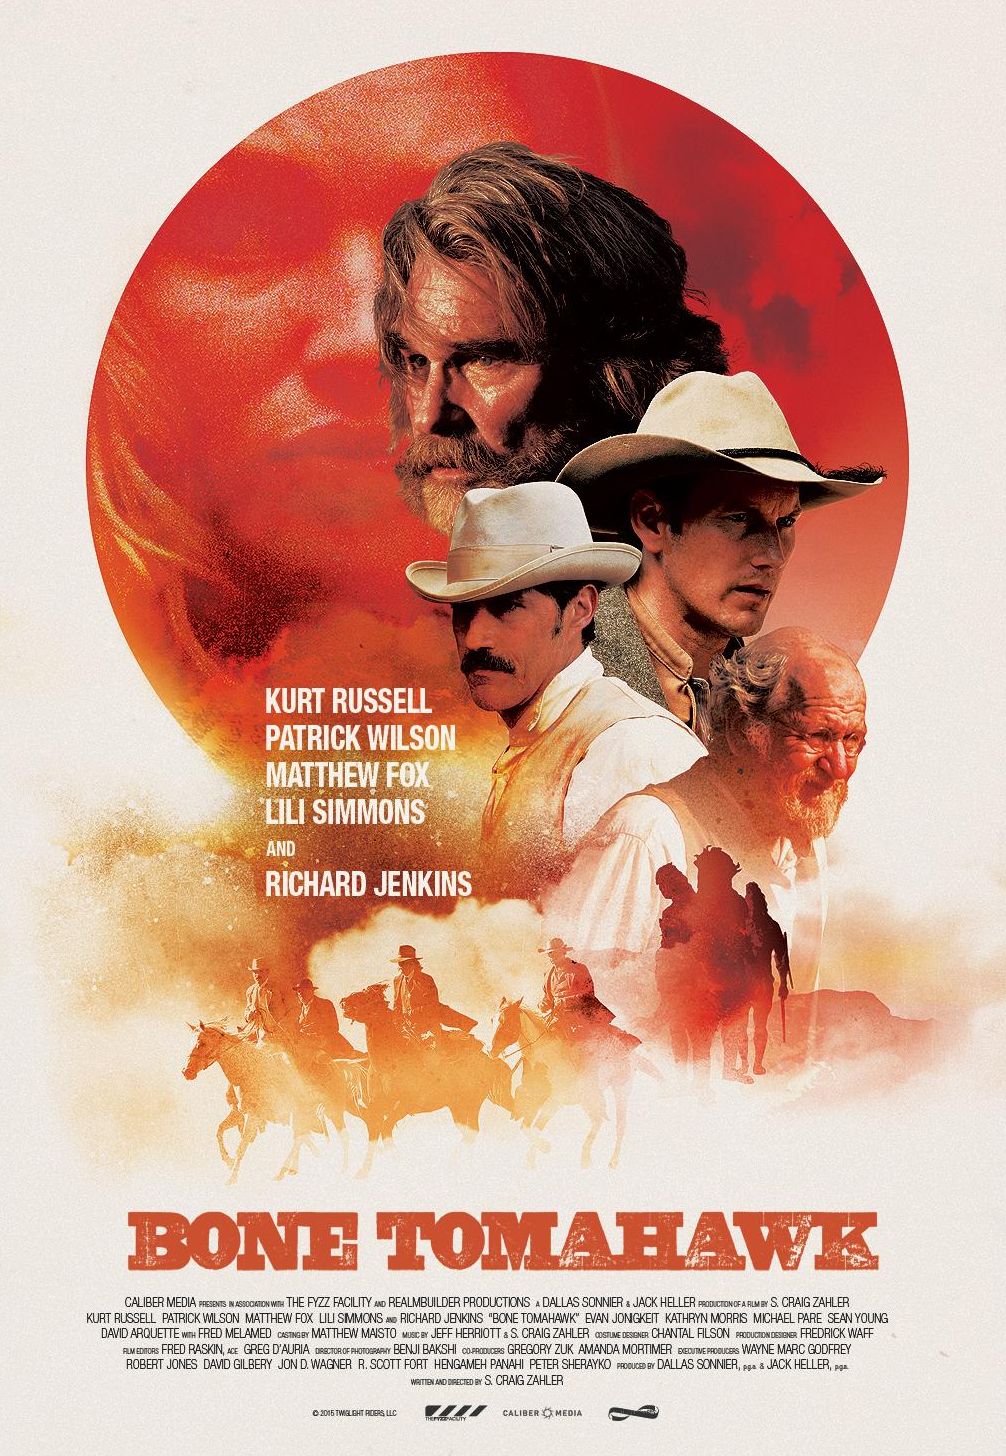 Kurt Russell’s other western 'Bone Tomahawk' also got a po